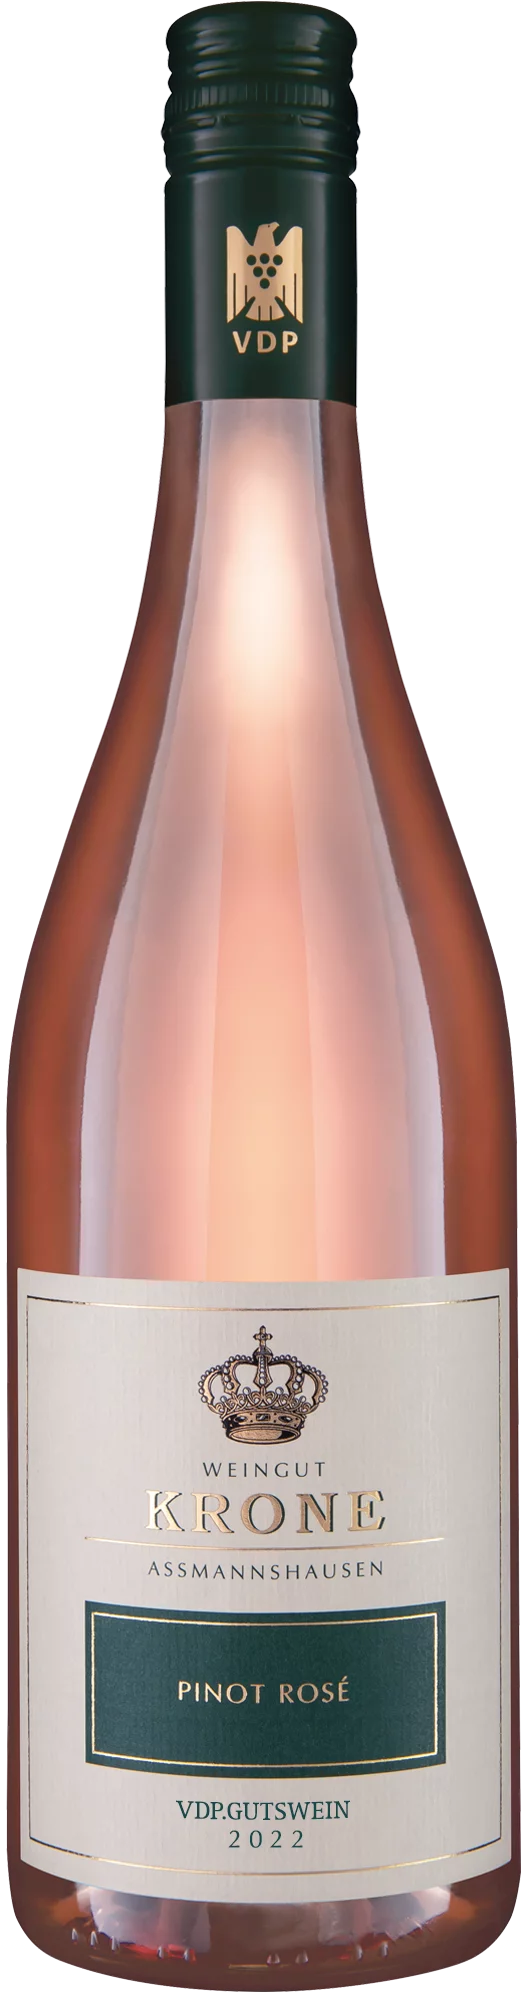 2022 Krone Pinot Rosé trocken 